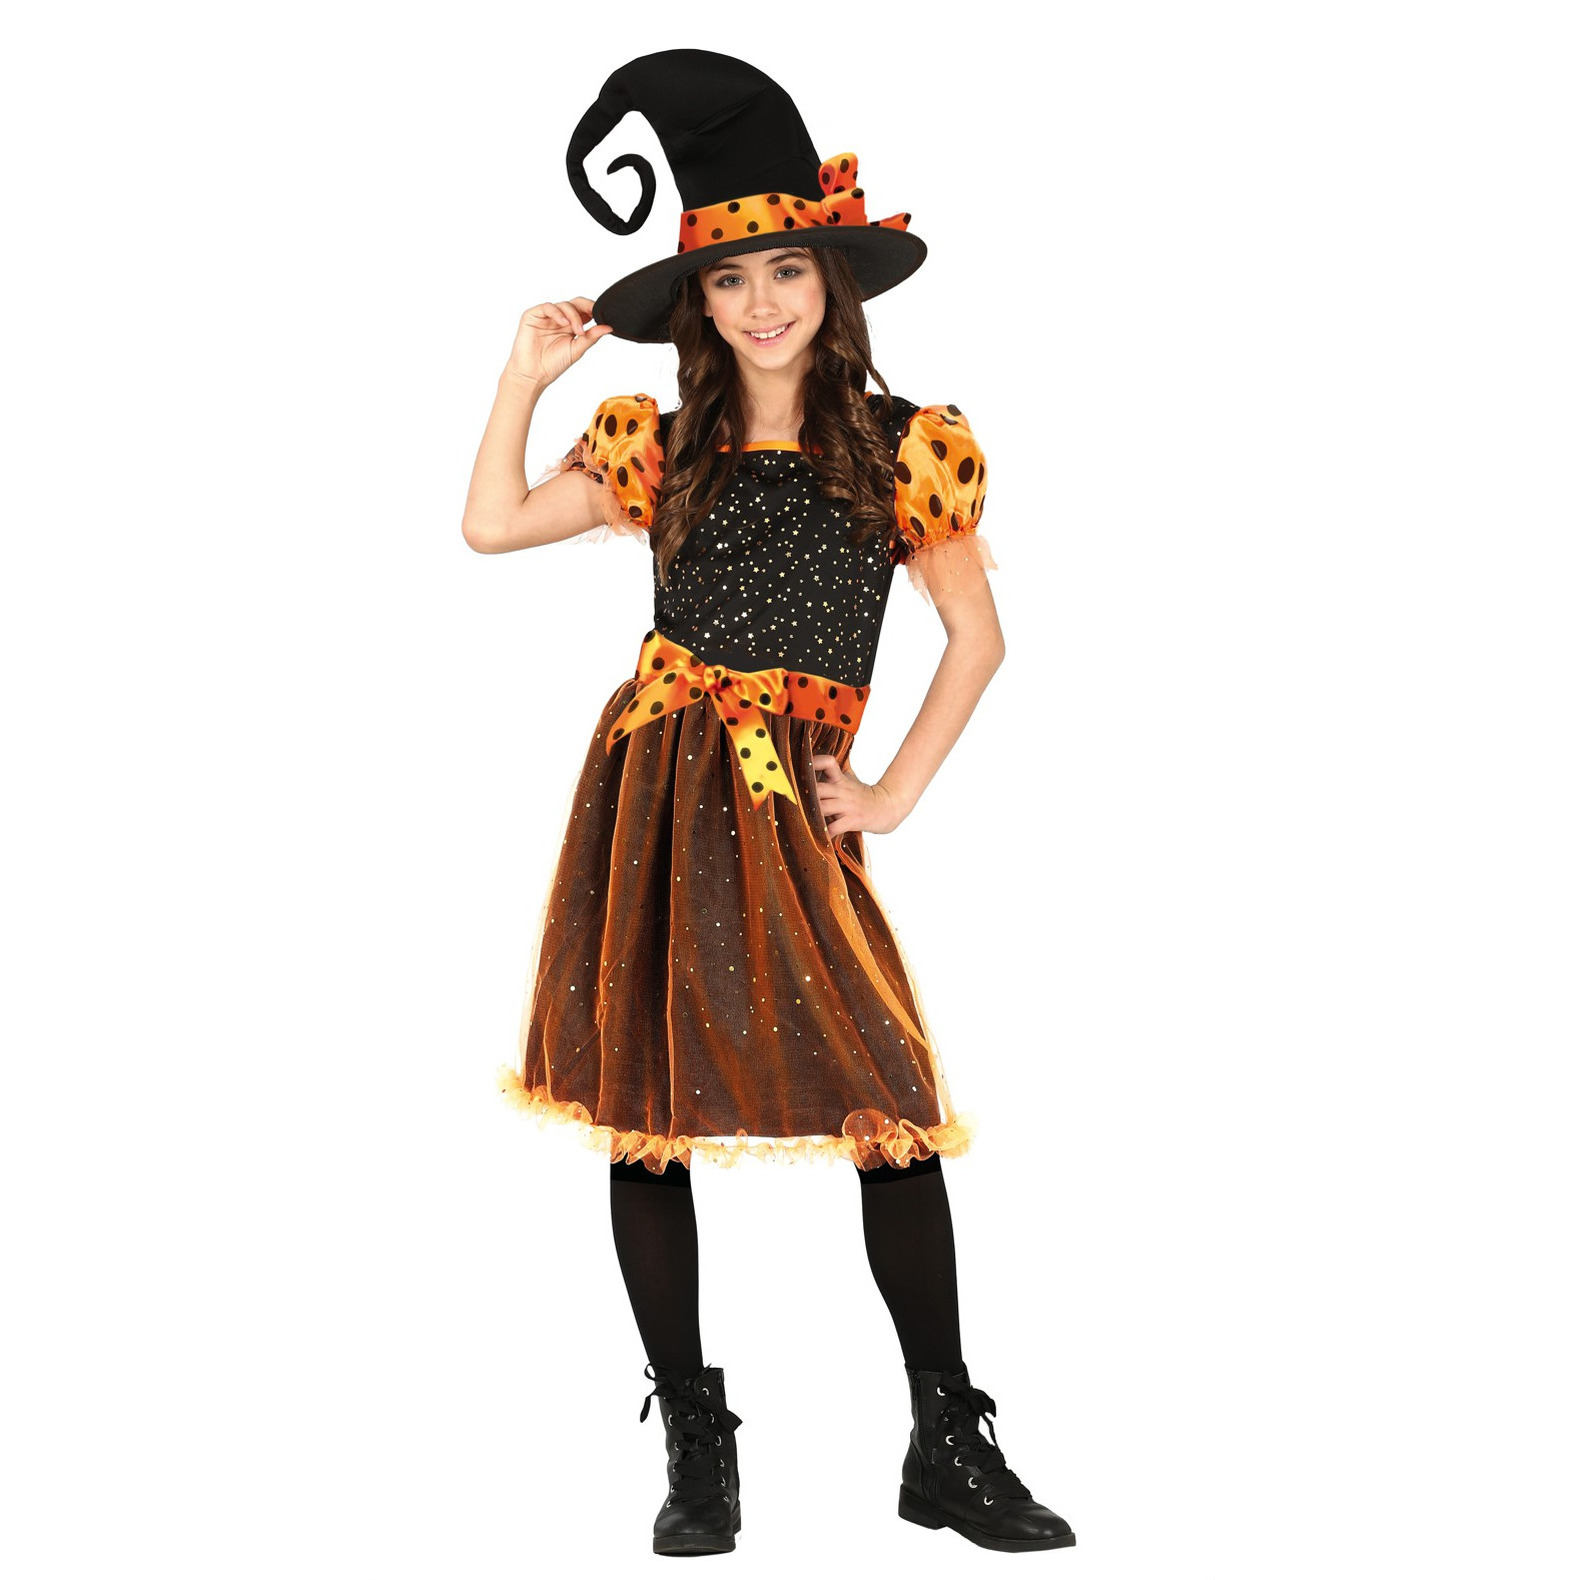 Heksen verkleed kostuum zwart-oranje voor meisjes